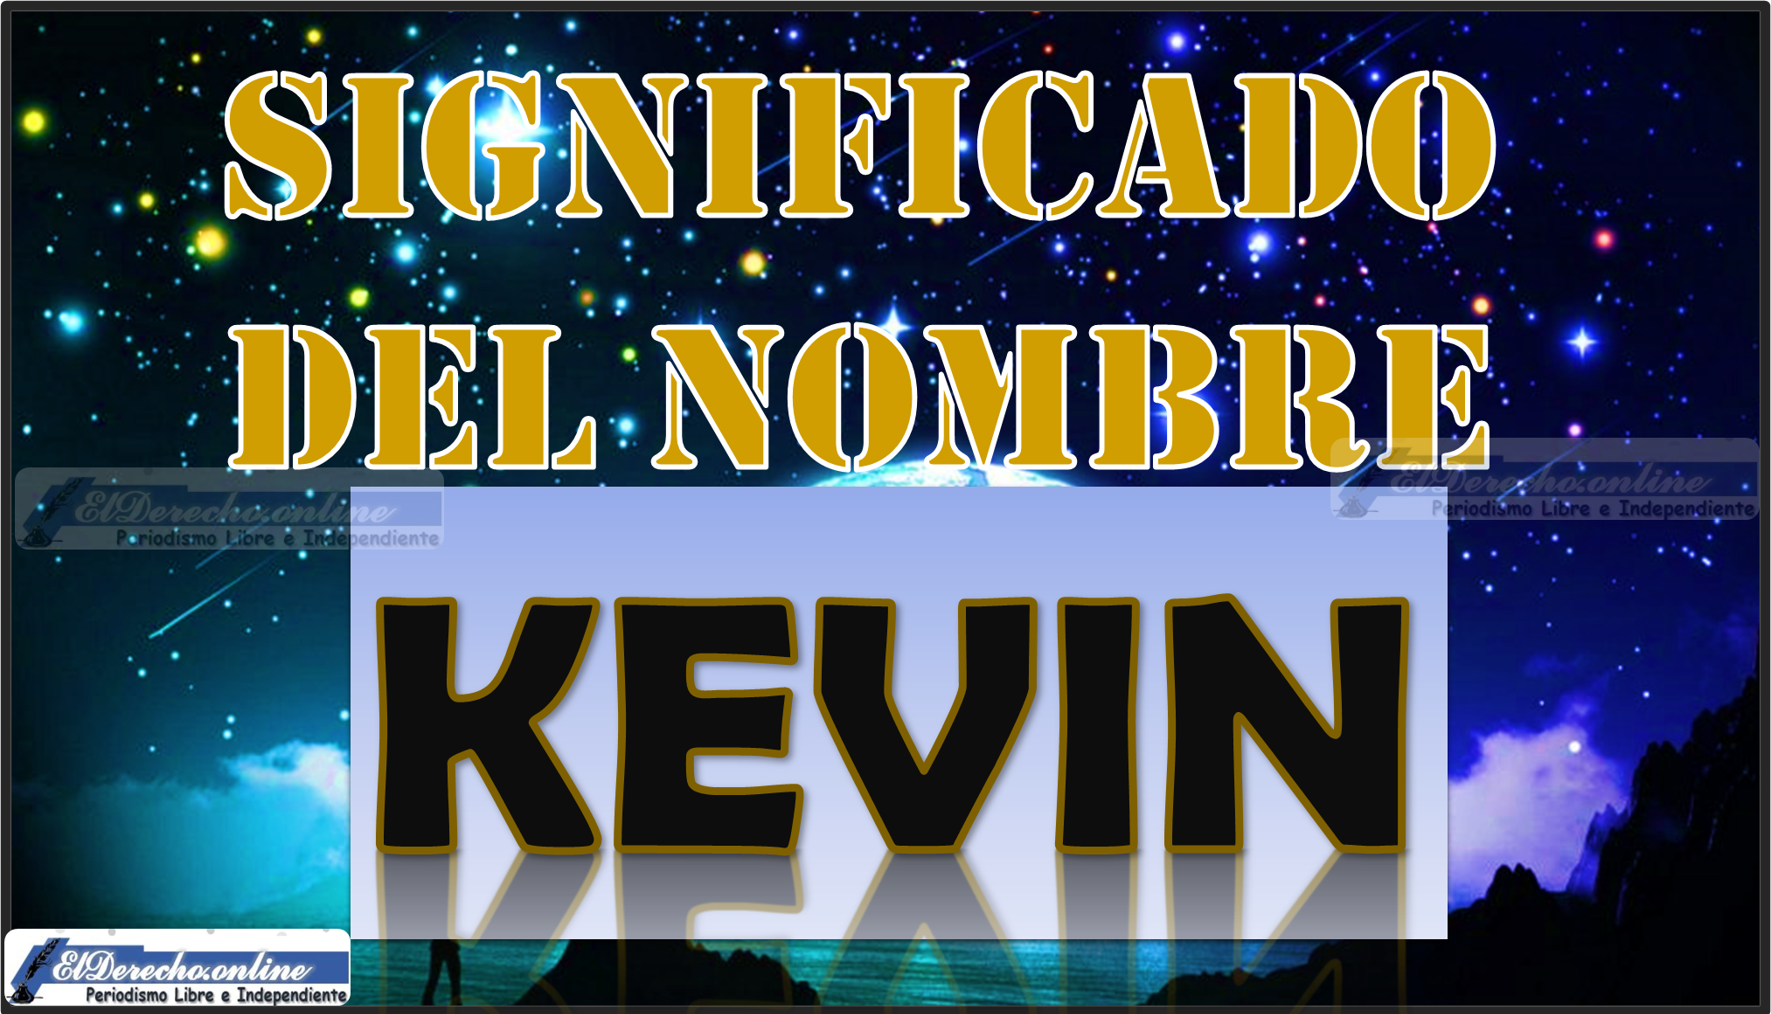 Significado del nombre Kevin, su origen y más